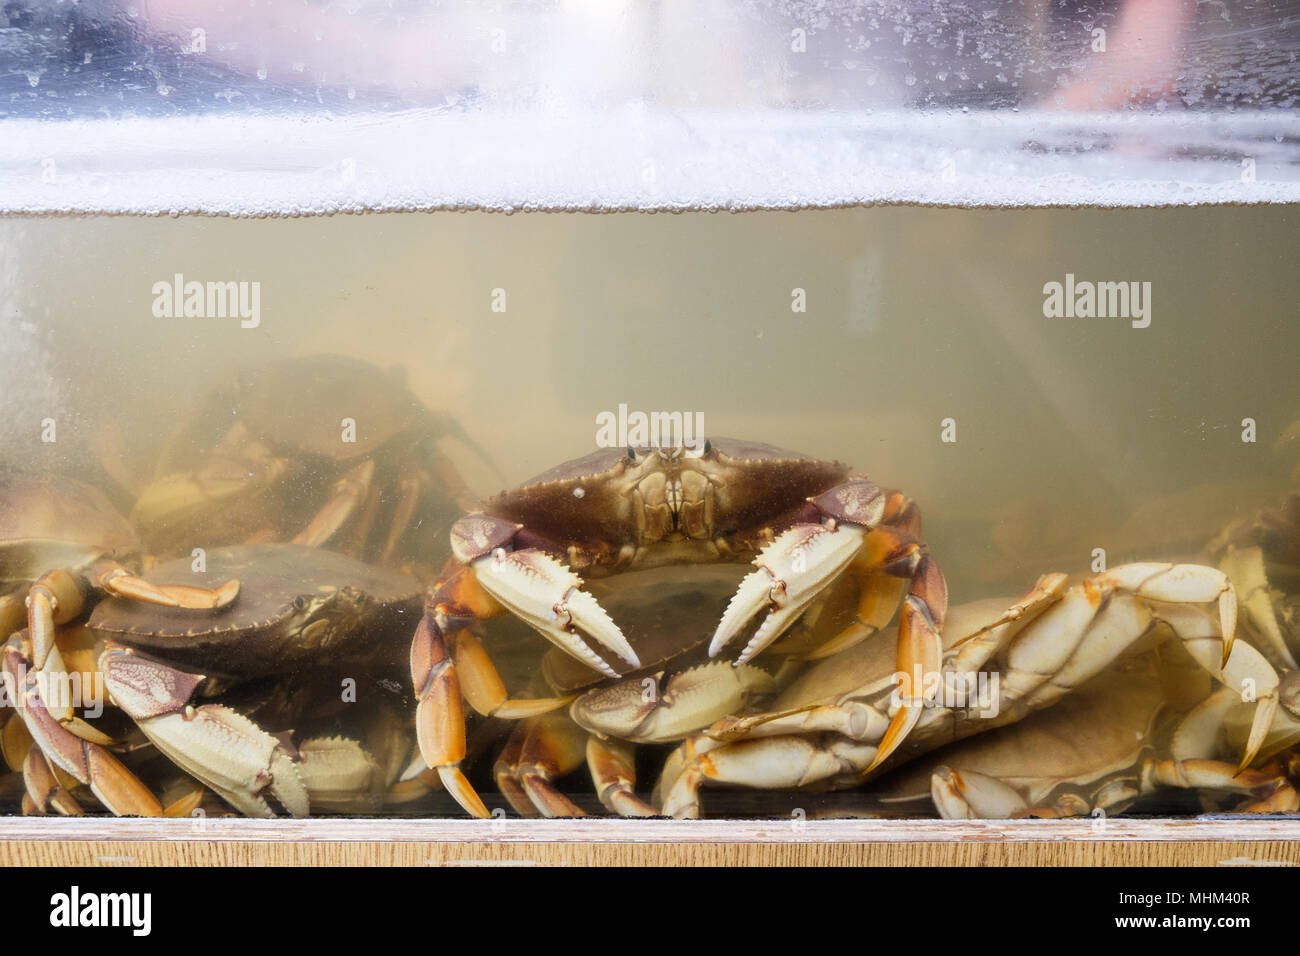 Krabben in einem Wassertank auf einem Fischmarkt in San Francisco, USA. Stockfoto